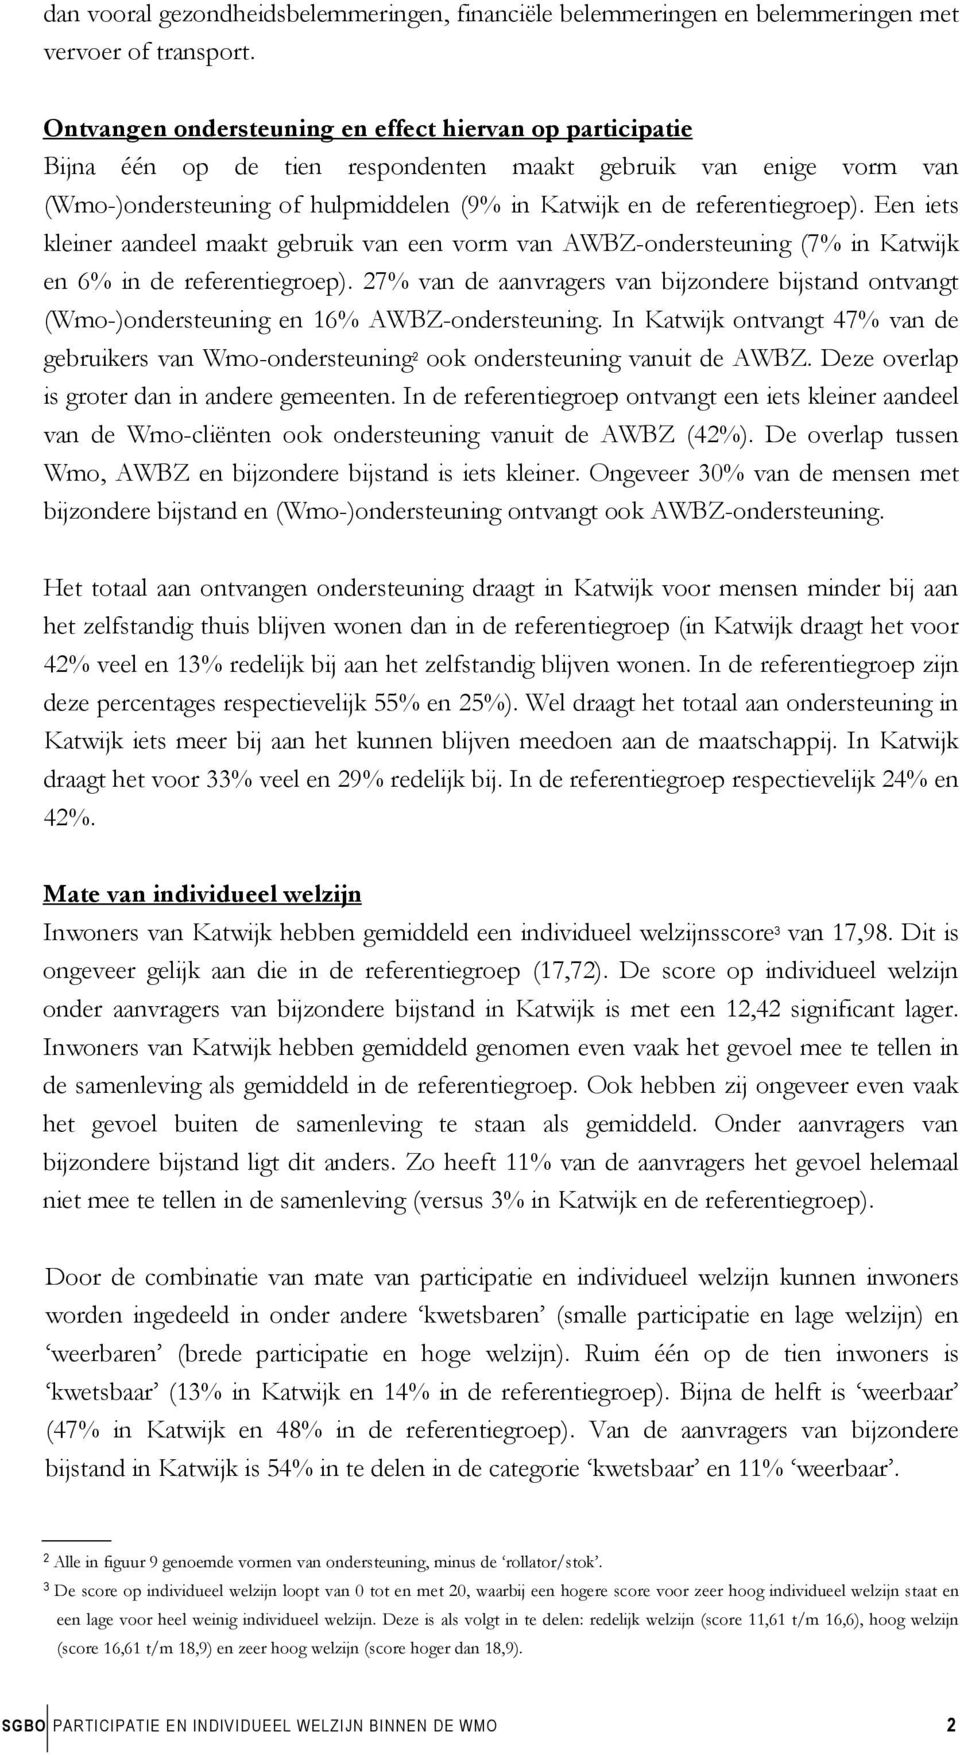 Een iets kleiner aandeel maakt gebruik van een vorm van AWBZ-ondersteuning (7% in Katwijk en 6% in de referentiegroep).